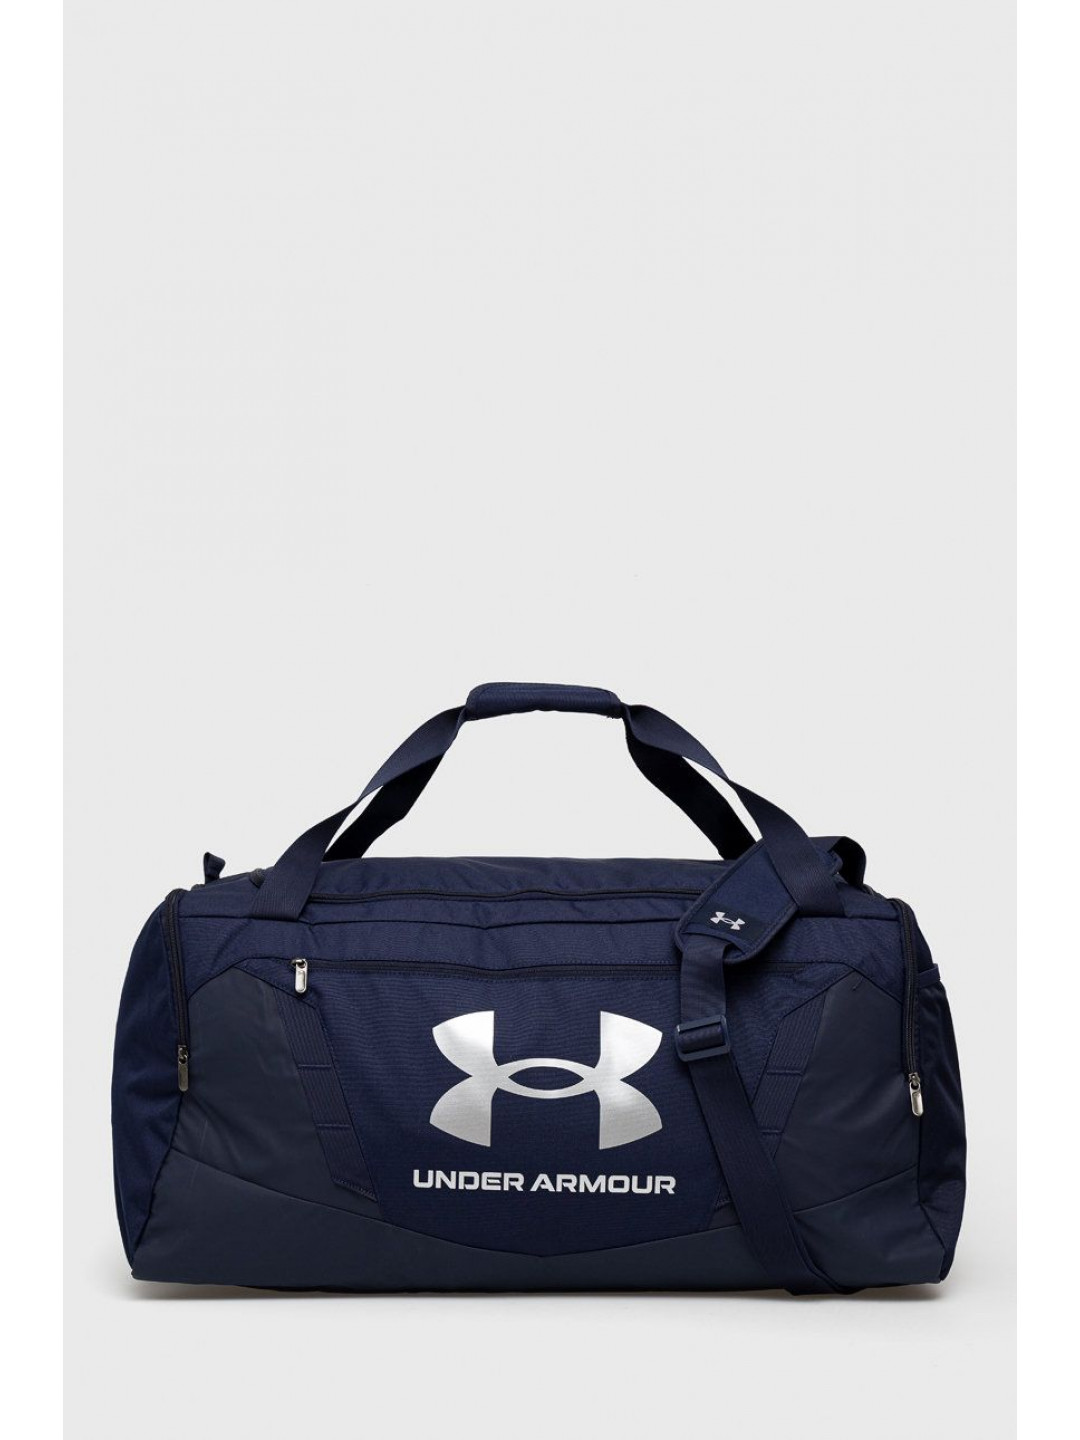 Sportovní taška Under Armour Undeniable 5 0 Large tmavomodrá barva 1369224